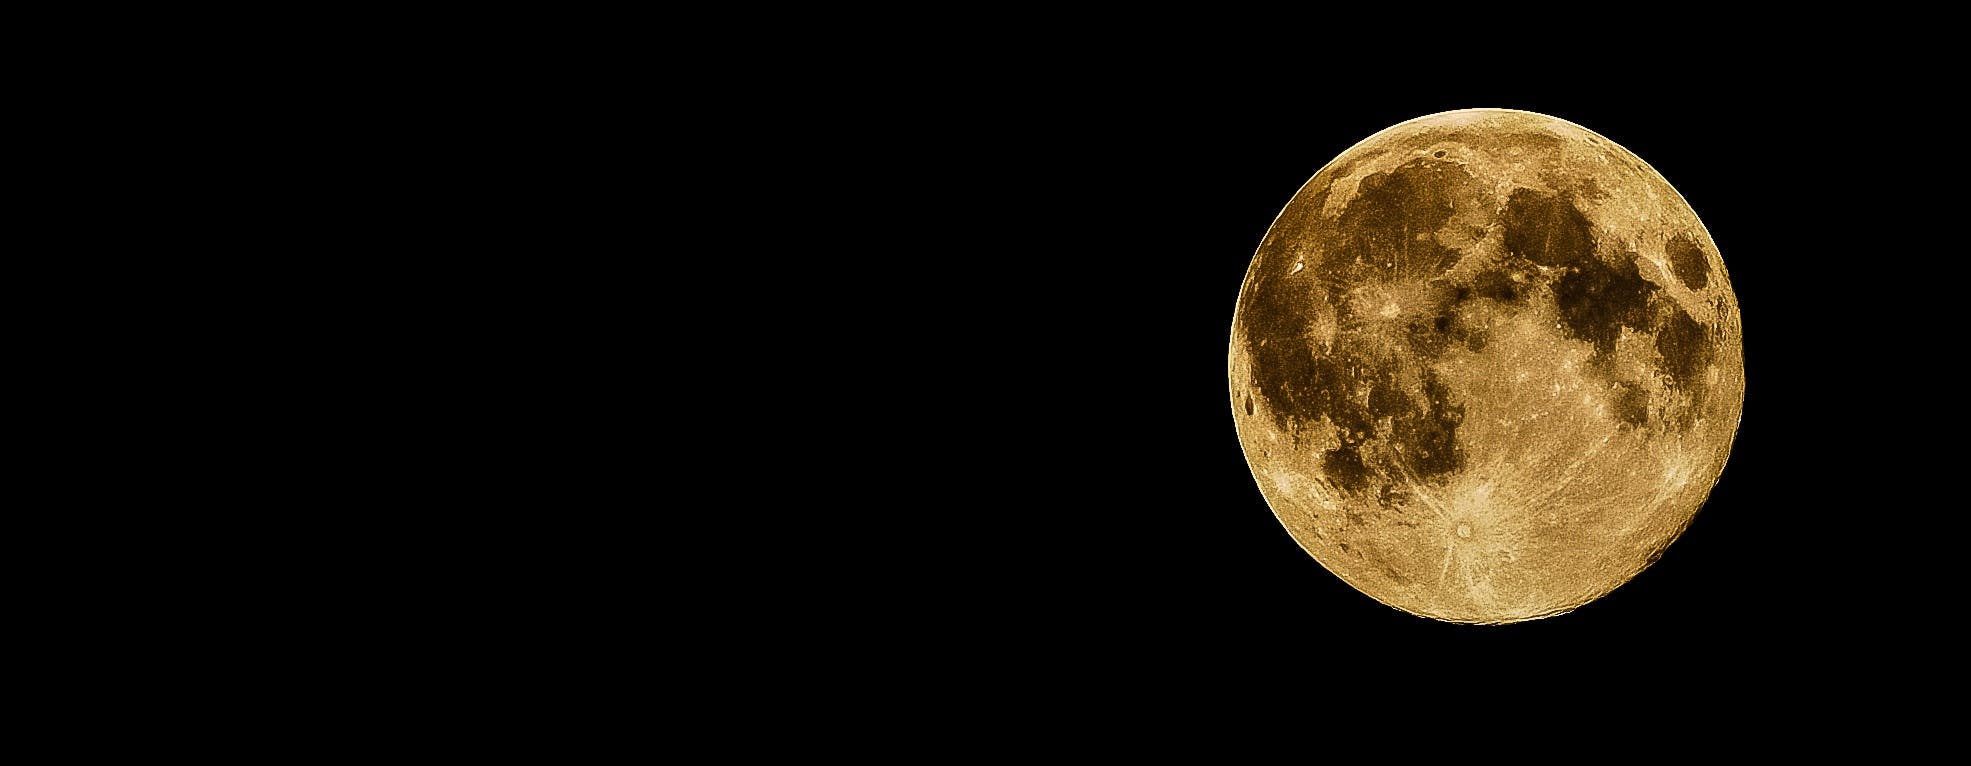 Đêm trăng tròn là thời điểm tuyệt vời nhất để tụ họp với người thân và bạn bè. Hãy chiêm ngưỡng bức hình của chúng tôi về đêm trăng tròn và cảm nhận sự rộn ràng của không khí đêm huyền bí này. 